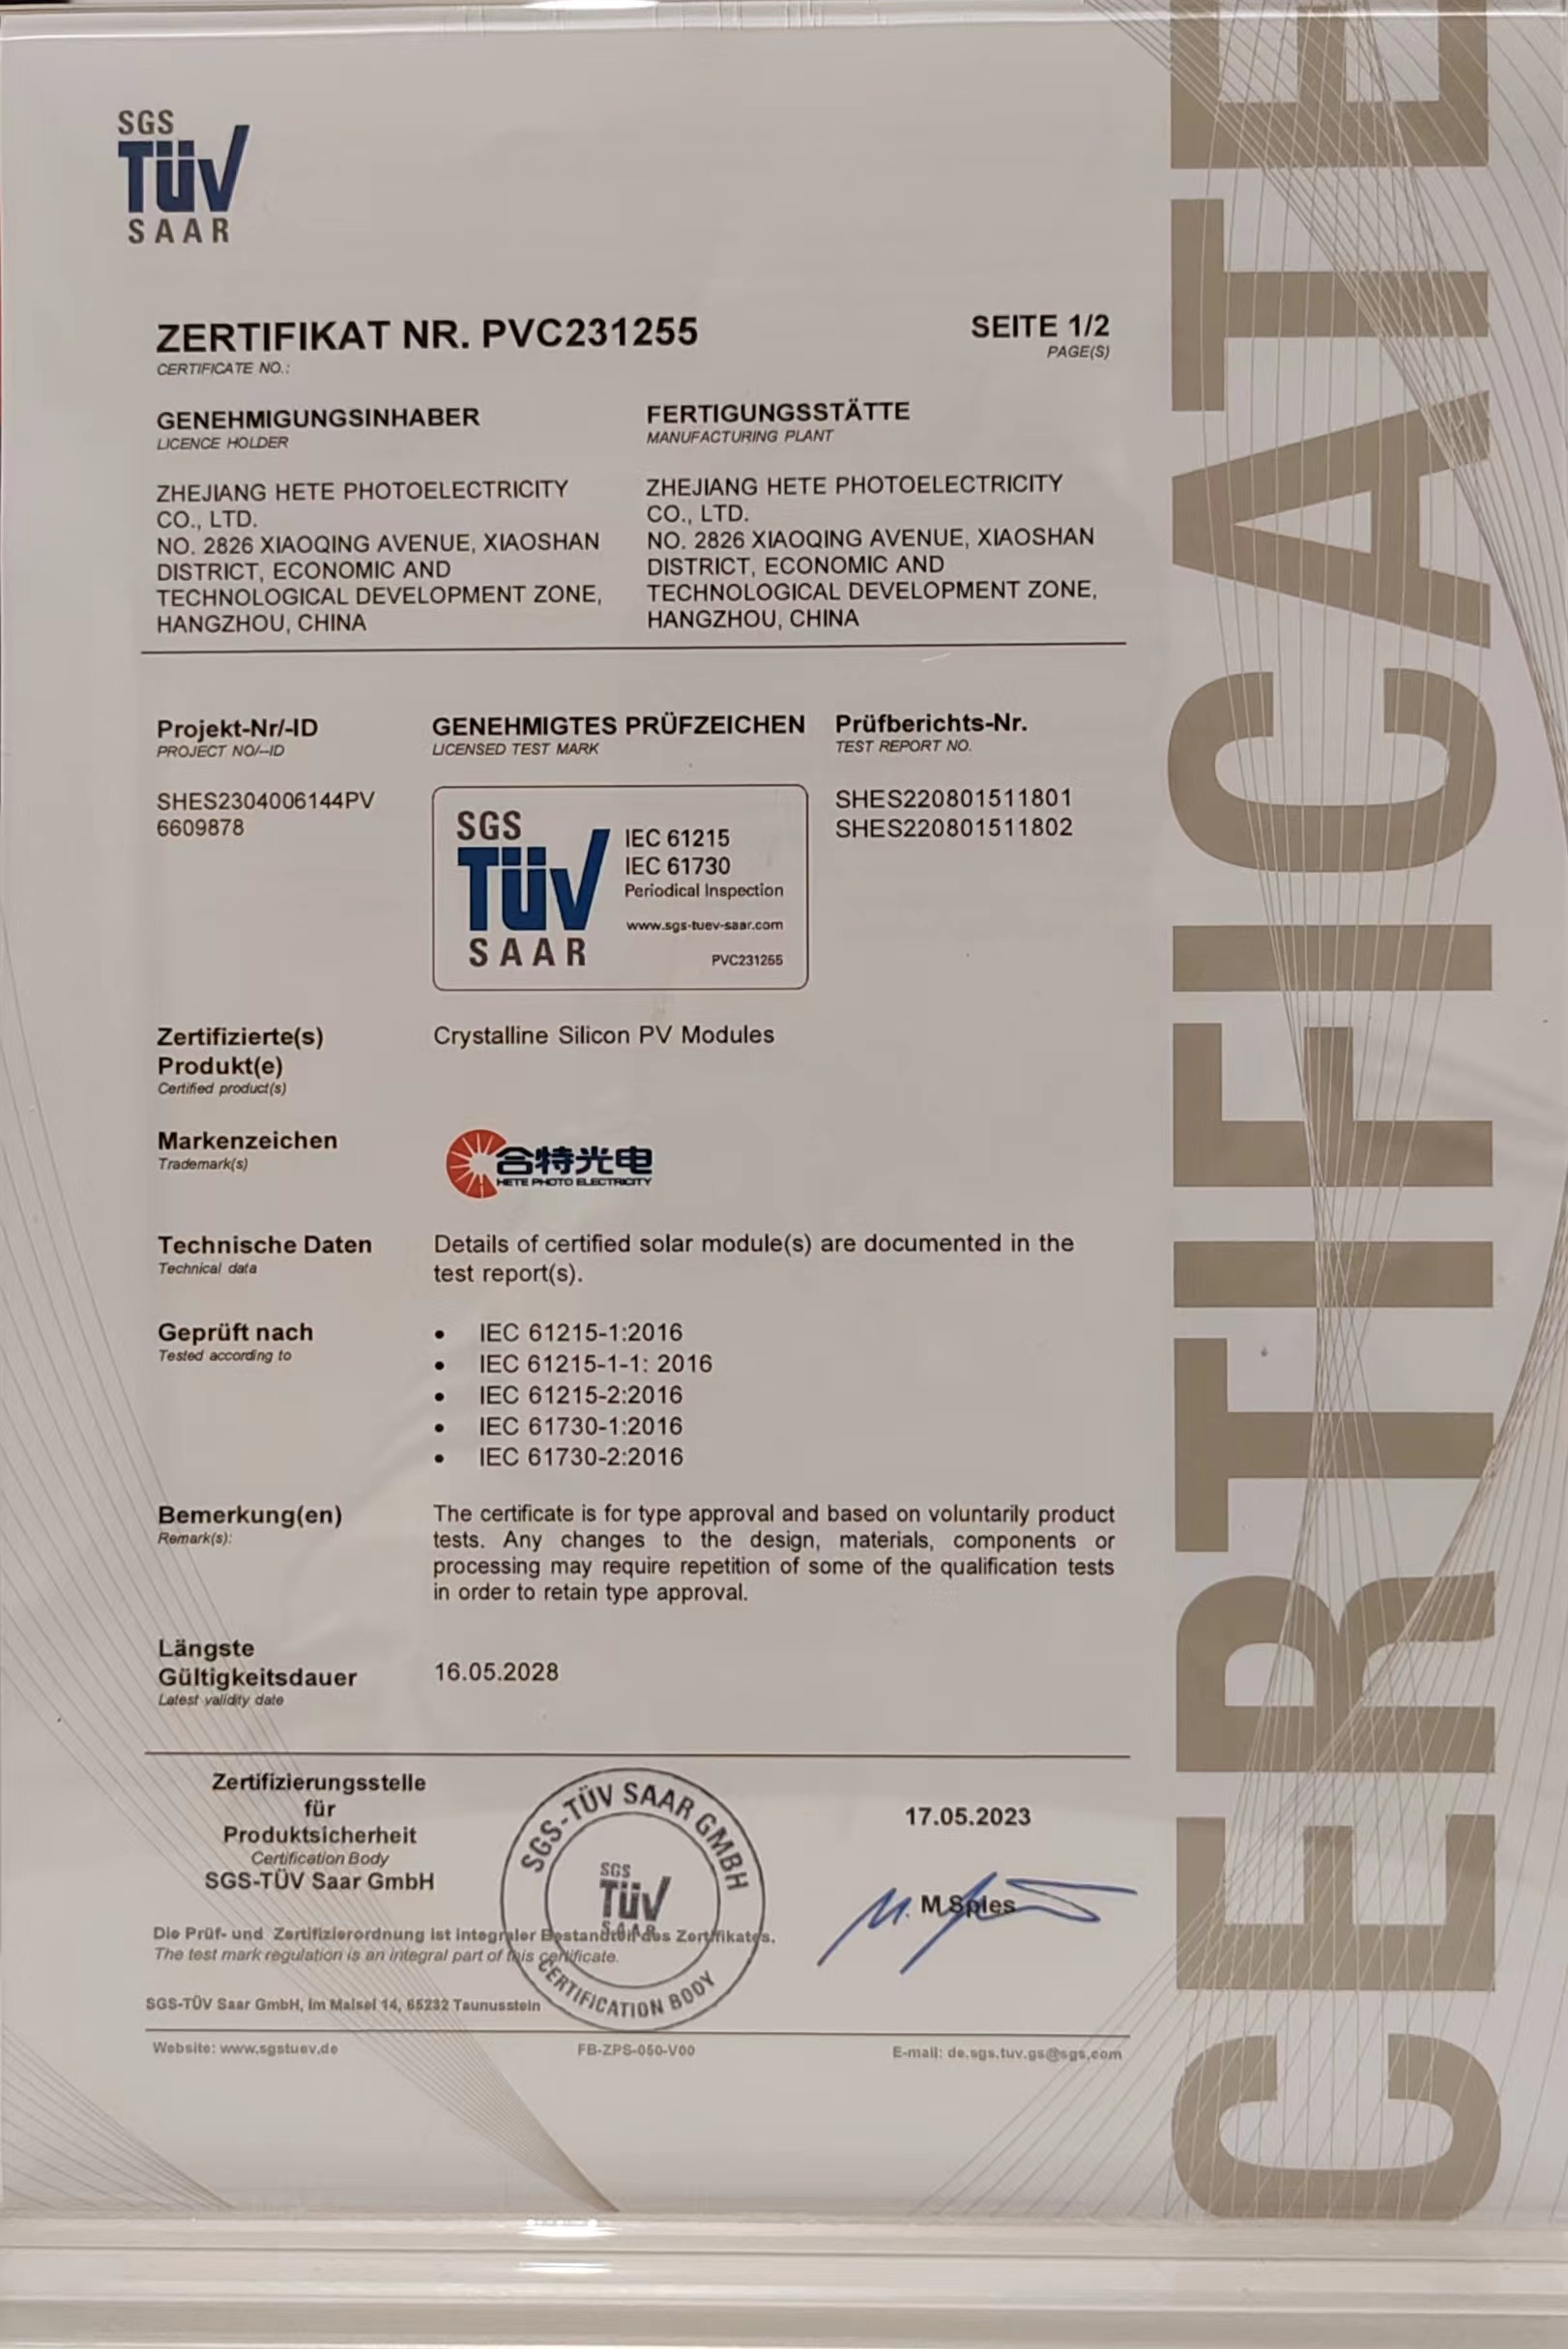 威斯尼斯人8188cc有限公司获得TUV认证证书